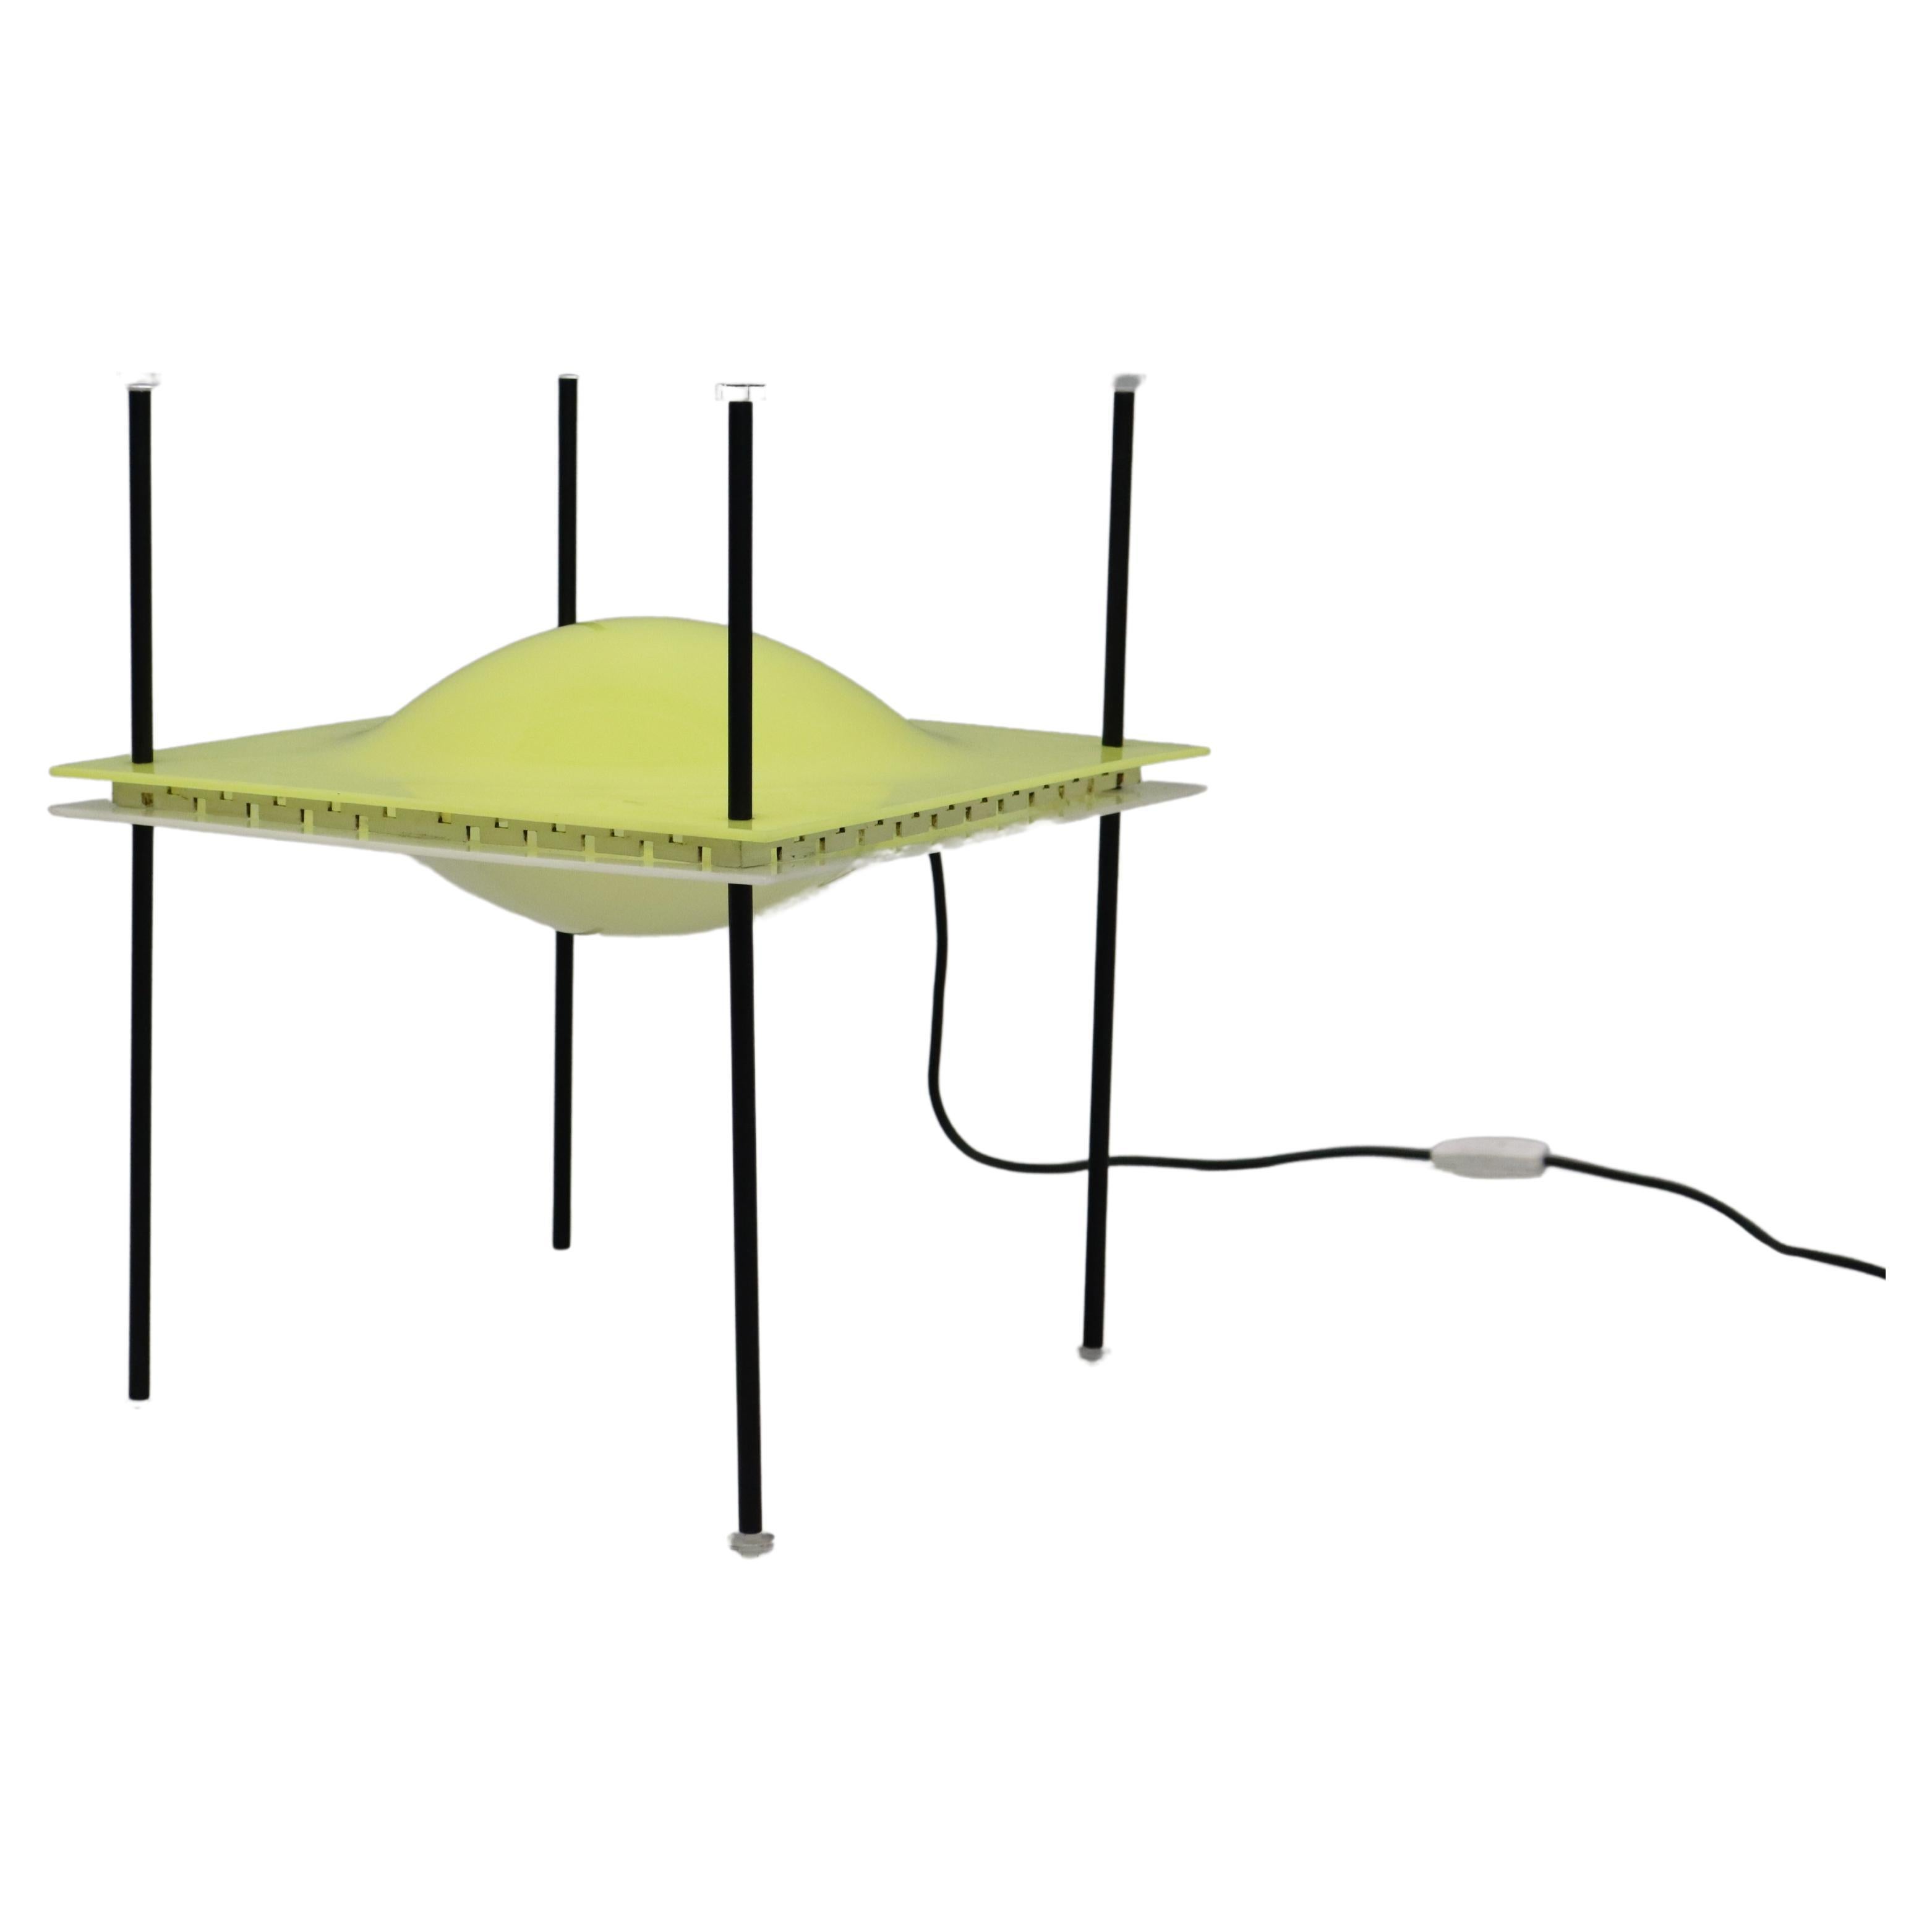 Seltene Tischleuchte "Palafitta", entworfen von Ettore Sottsass für Arredoluce 